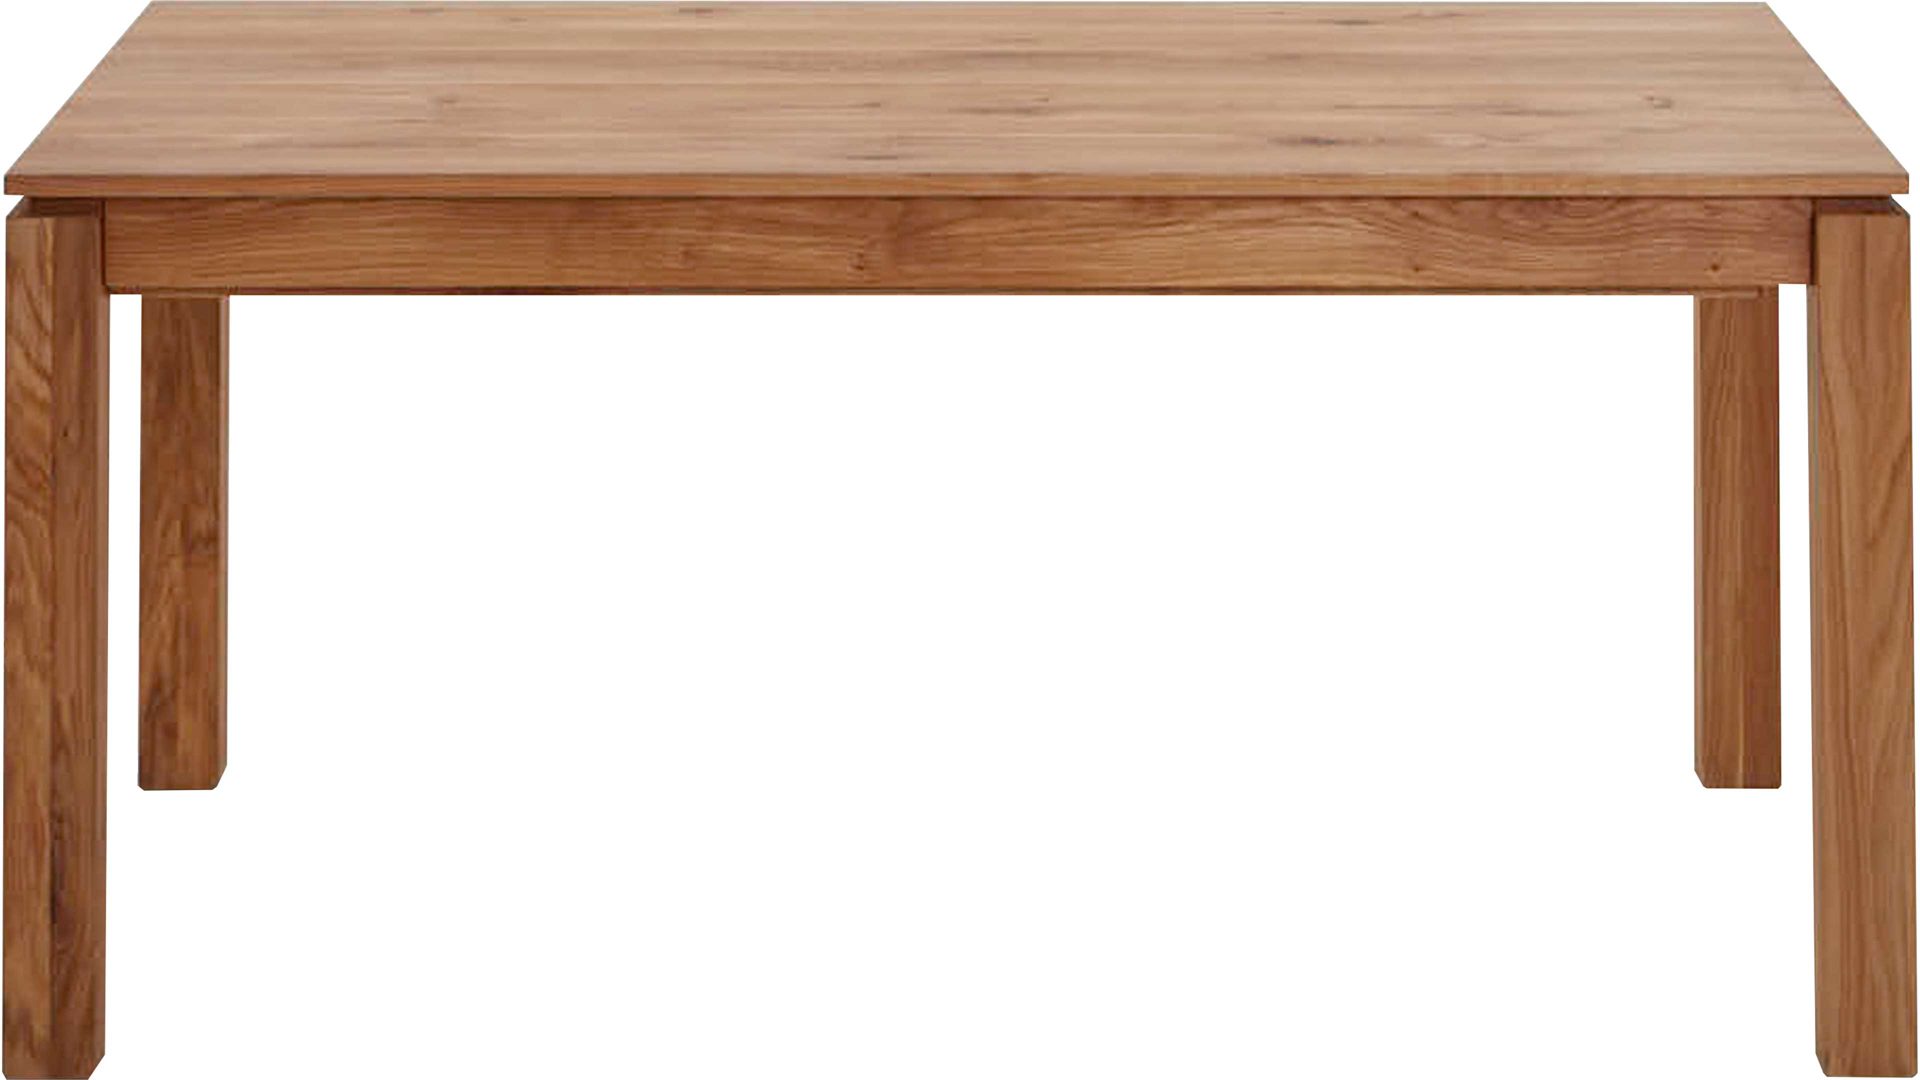 Auszugtisch Standard furniture factory aus Holz in Holzfarben Massivholztisch Vada mit Ausziehfunktion rustikal geölte Eiche - ca. 90 x 160-280 cm